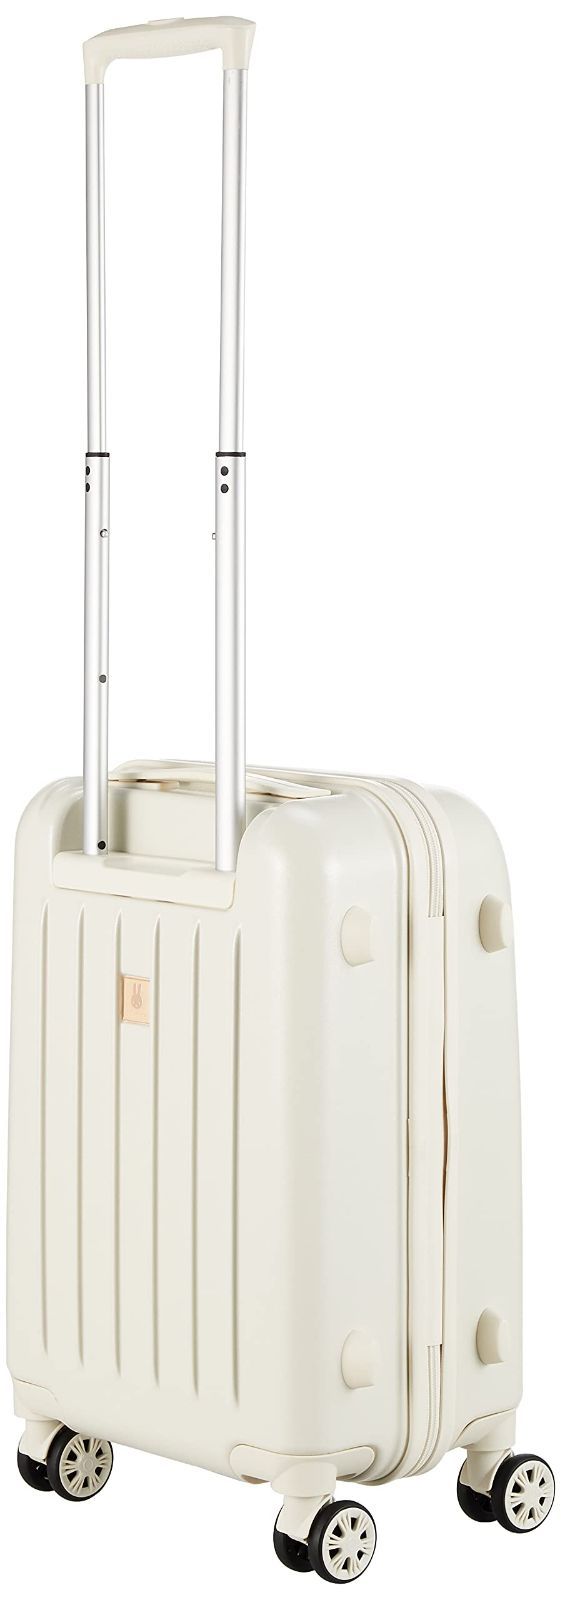 ハピタス スーツケース HAP3110 62 cm B99 フェイスホワイト ...H53×W36×D20cm素材